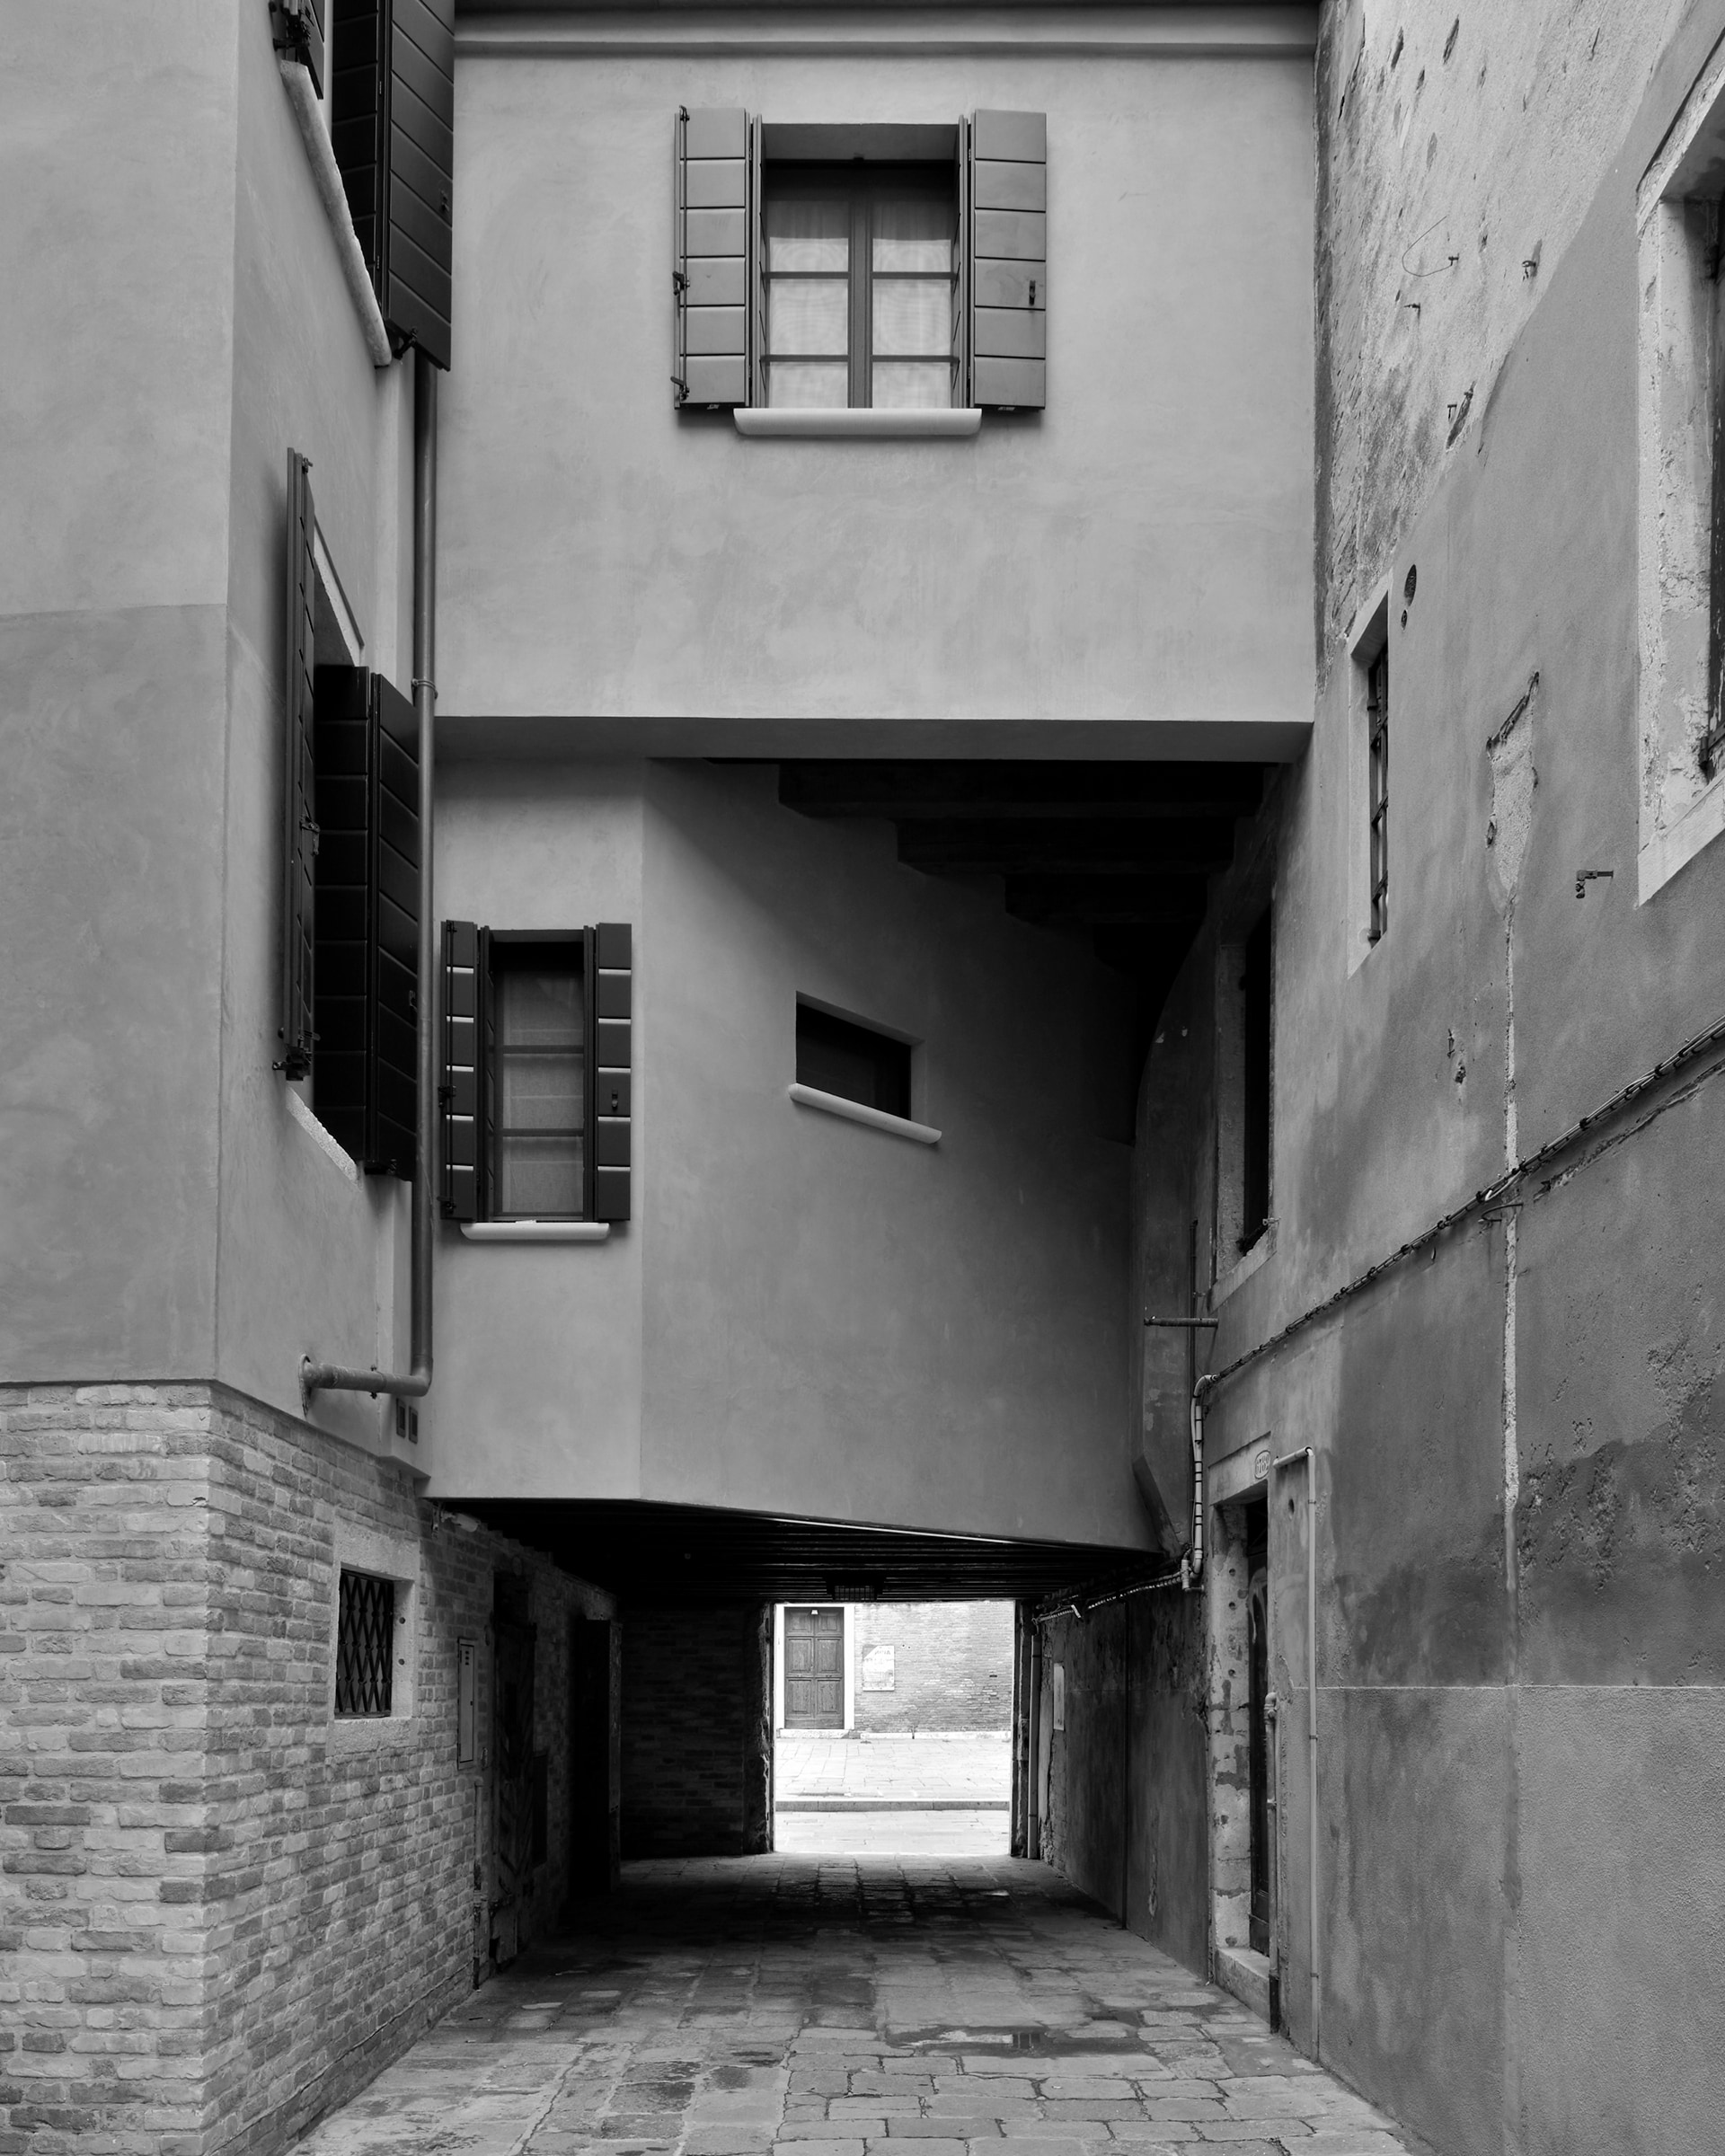 Castello, Corte Bressana, 2019. Venice Urban Photo Project / Mario Peliti